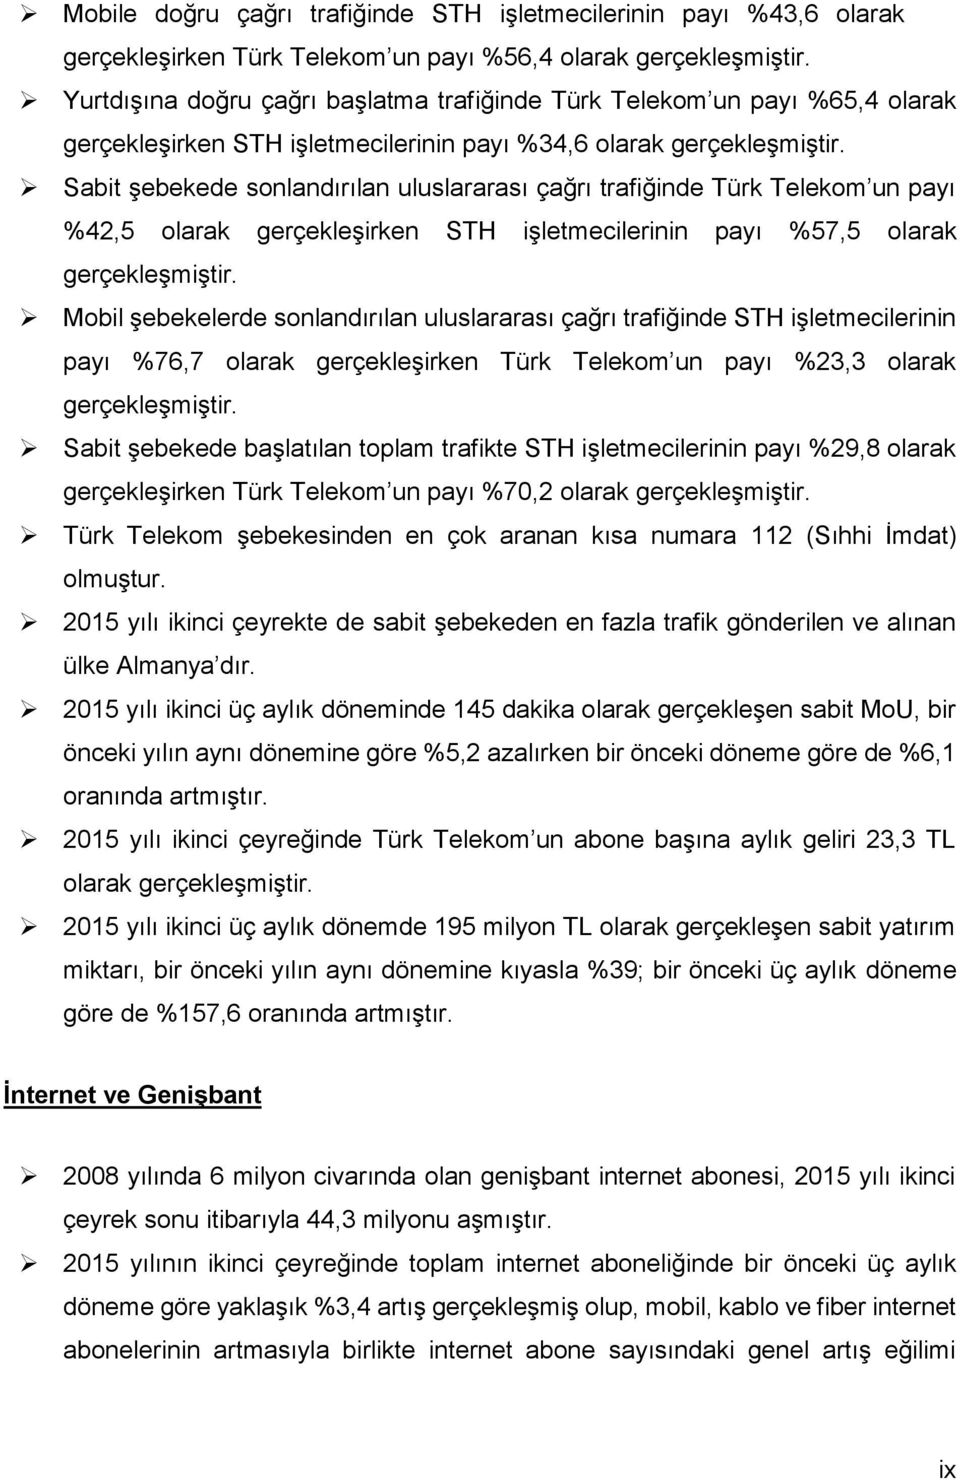 Sabit şebekede sonlandırılan uluslararası çağrı trafiğinde Türk Telekom un payı %42,5 olarak gerçekleşirken STH işletmecilerinin payı %57,5 olarak gerçekleşmiştir.